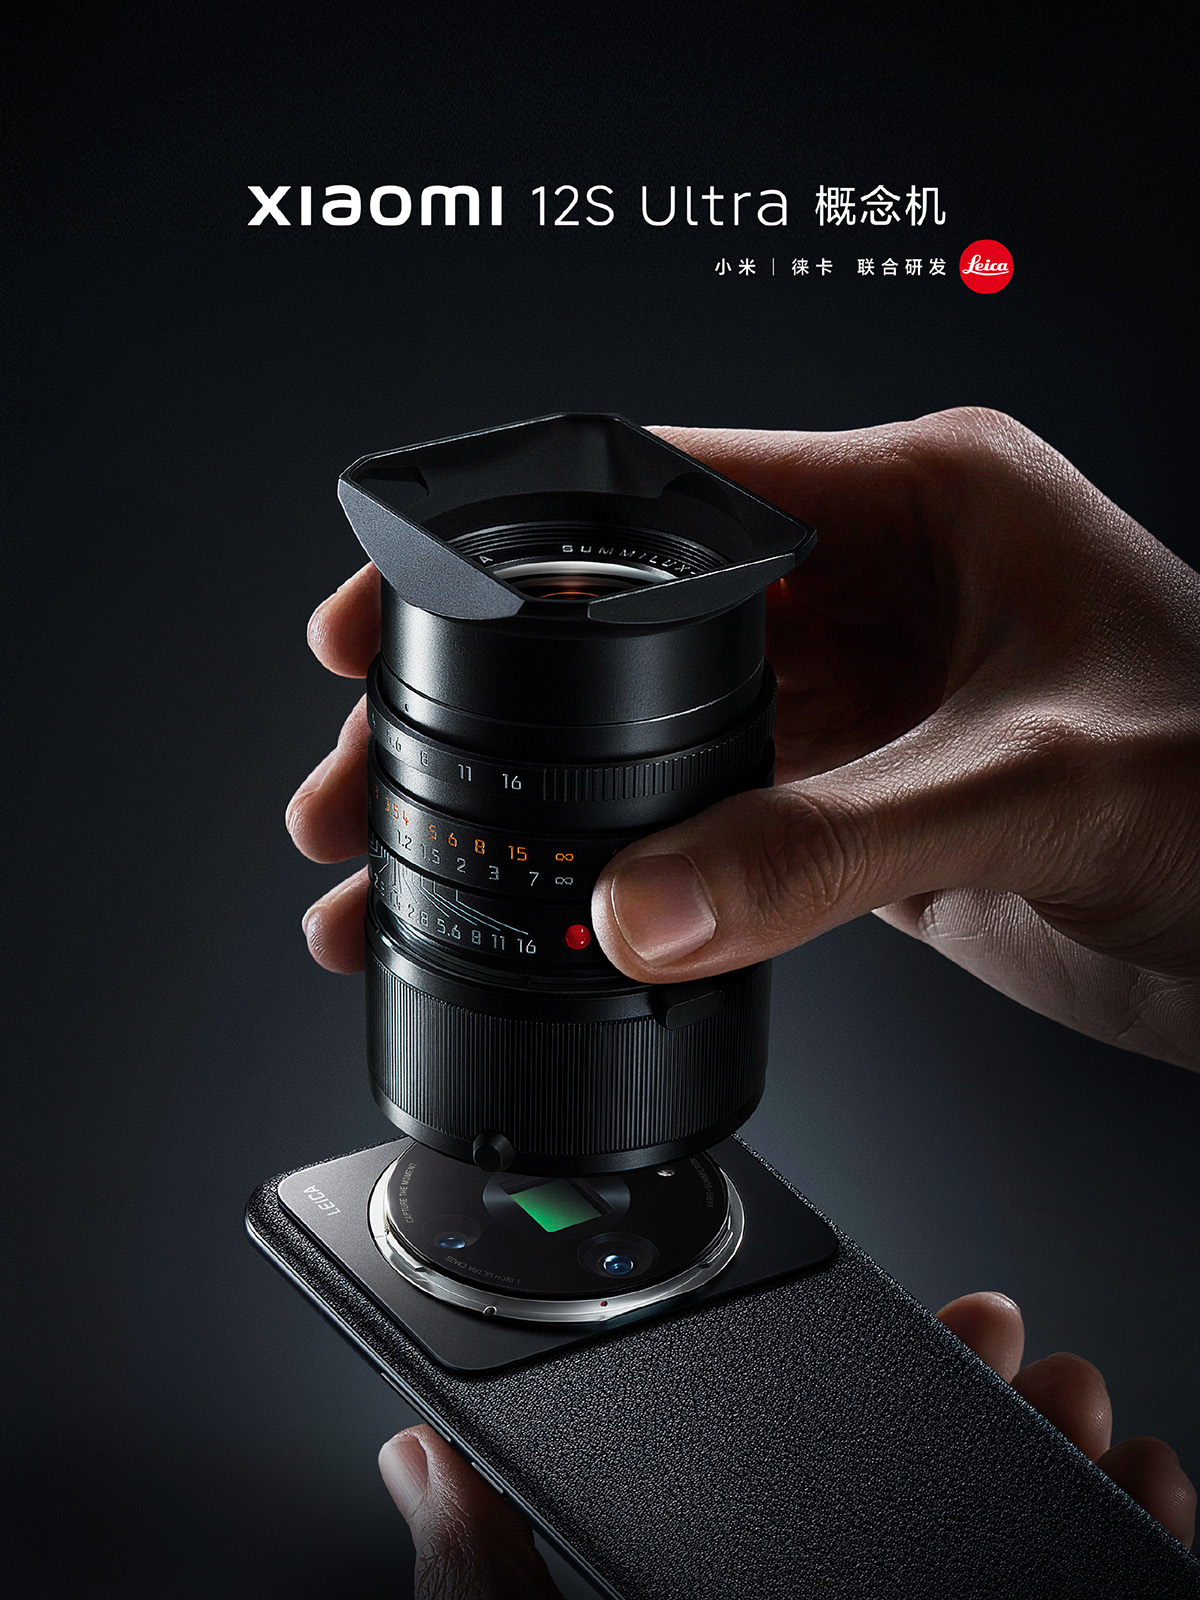 xiaomi 12s ultra concept leica lens 1